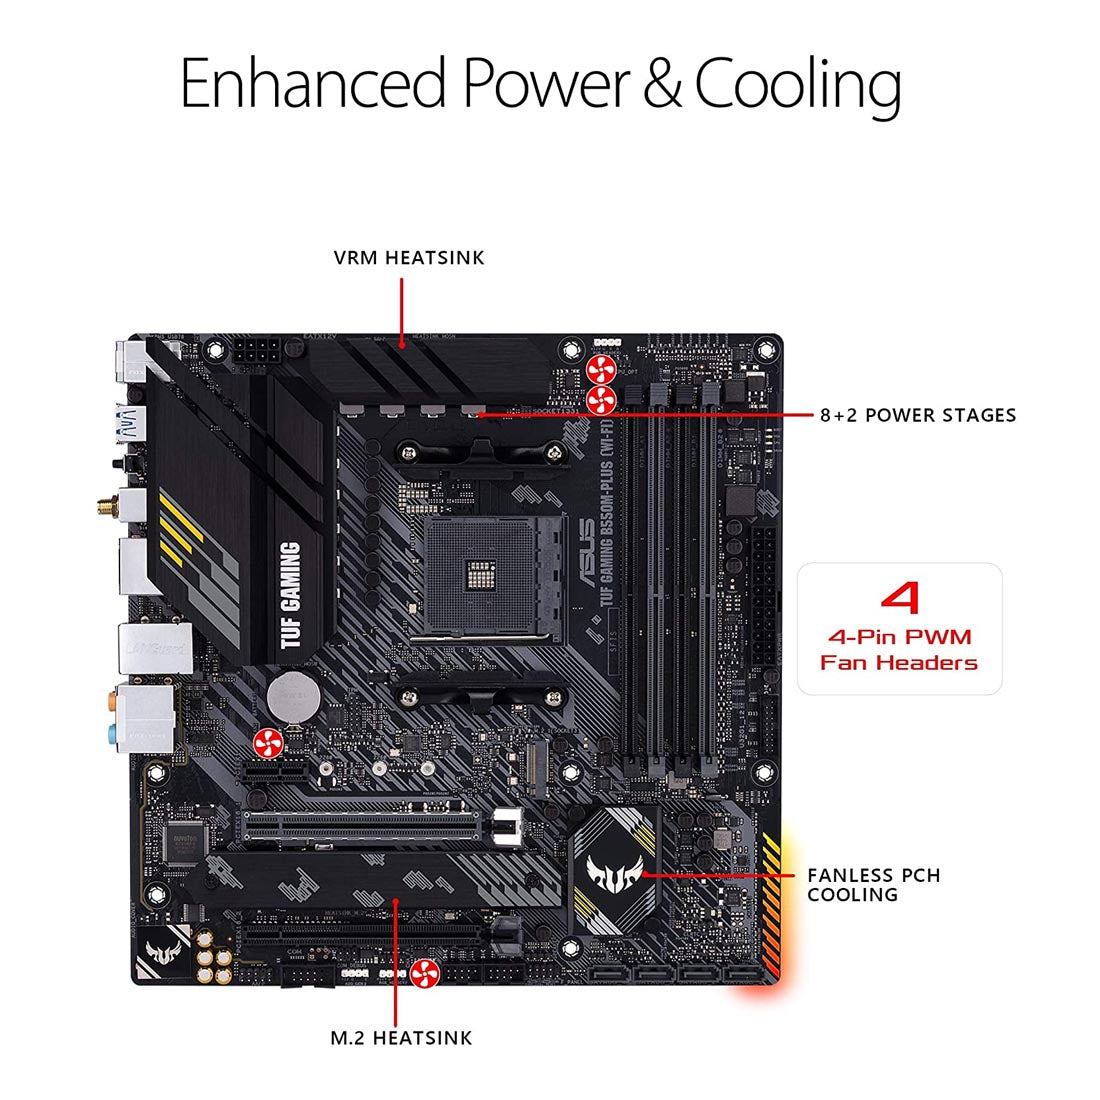 Asus B550 TUF गेमिंग B550M-Plus WiFi AMD AM4 mATX गेमिंग मदरबोर्ड PCIe 4.0 डुअल M.2 और ऑरा सिंक के साथ